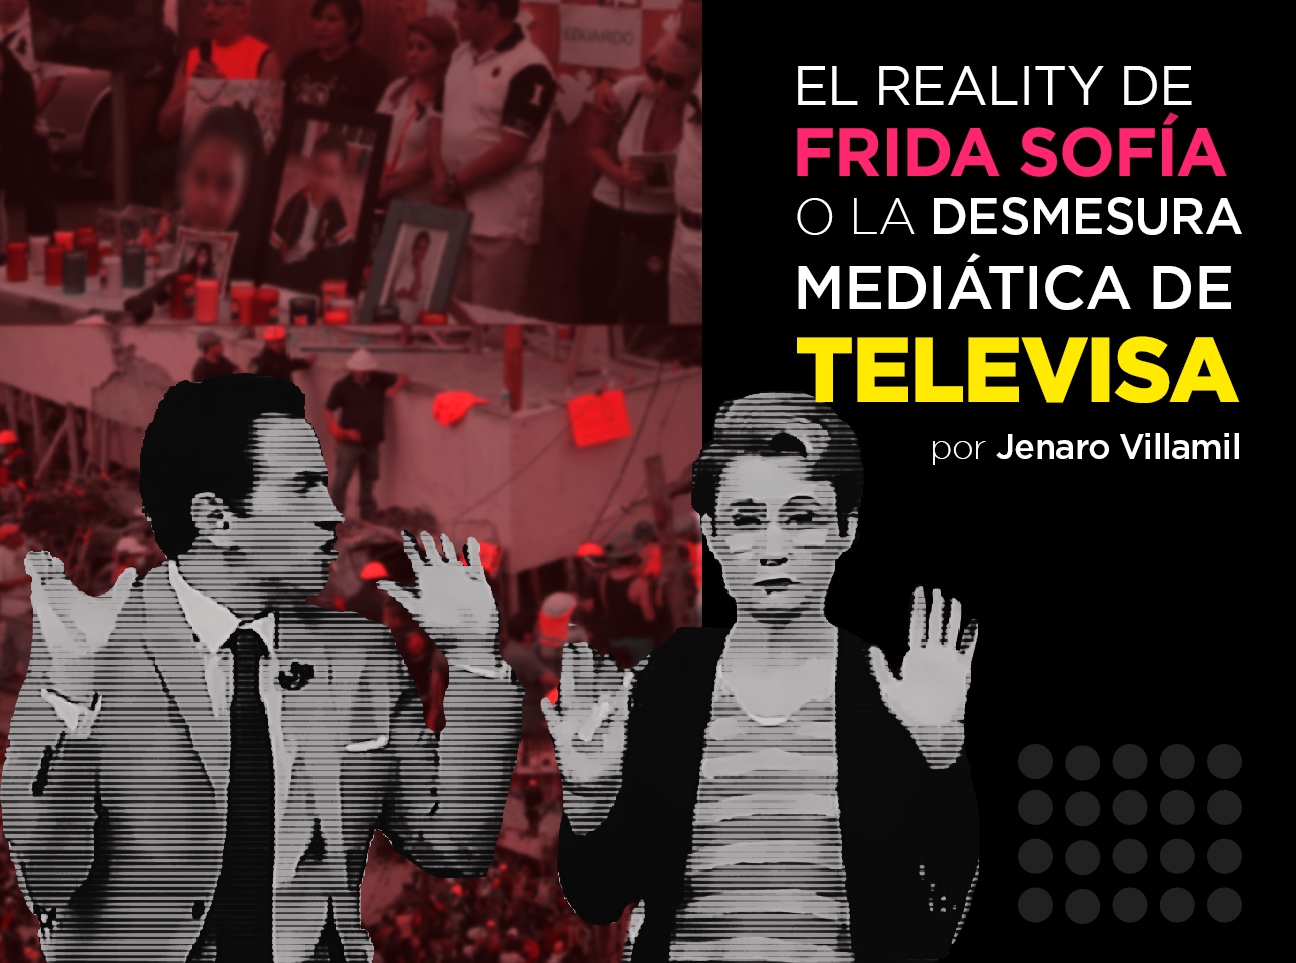 El reality de Frida Sofía o la desmesurada mediática de Televisa